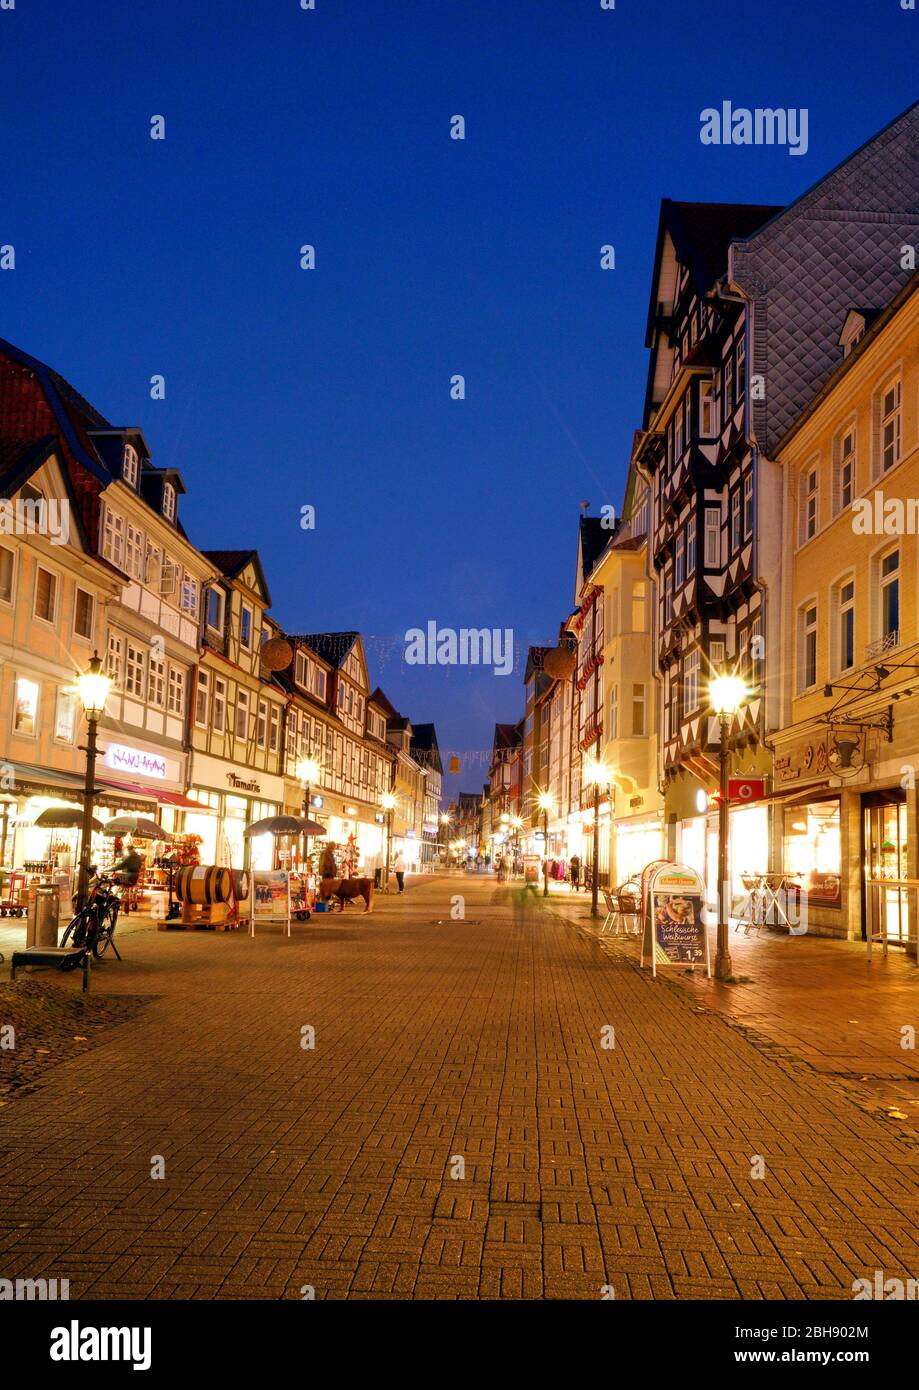 Deutschland, Niedersachsen, Wolfenbüttel, Altstadt, Lange Herzogstraße, Fußgängerzone, Fachwerkhäuser, abende, beleuchtet Foto Stock